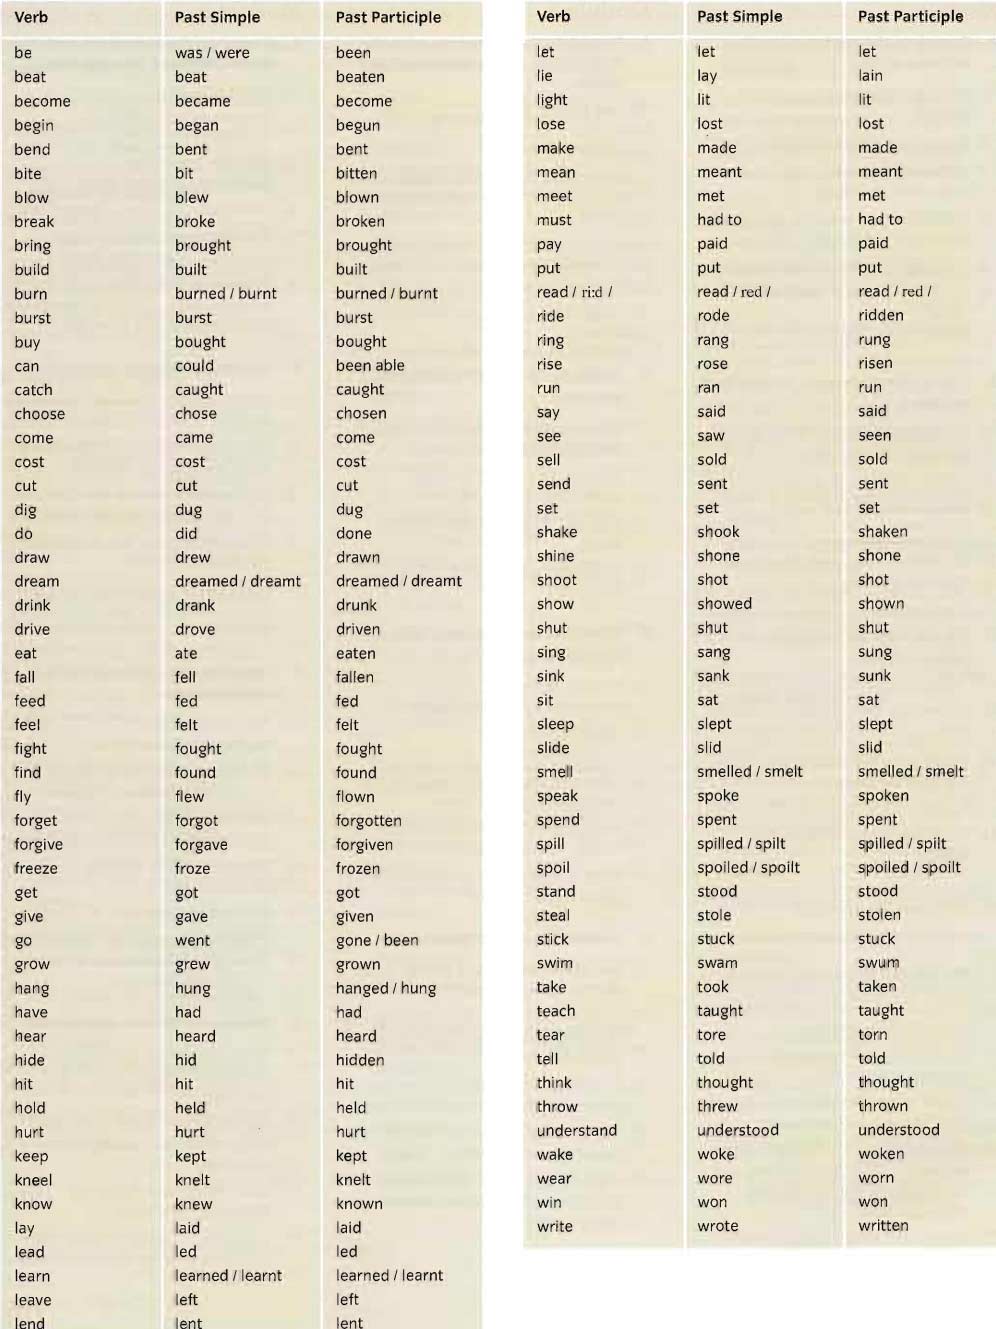 Множественное число существительных в английском языке